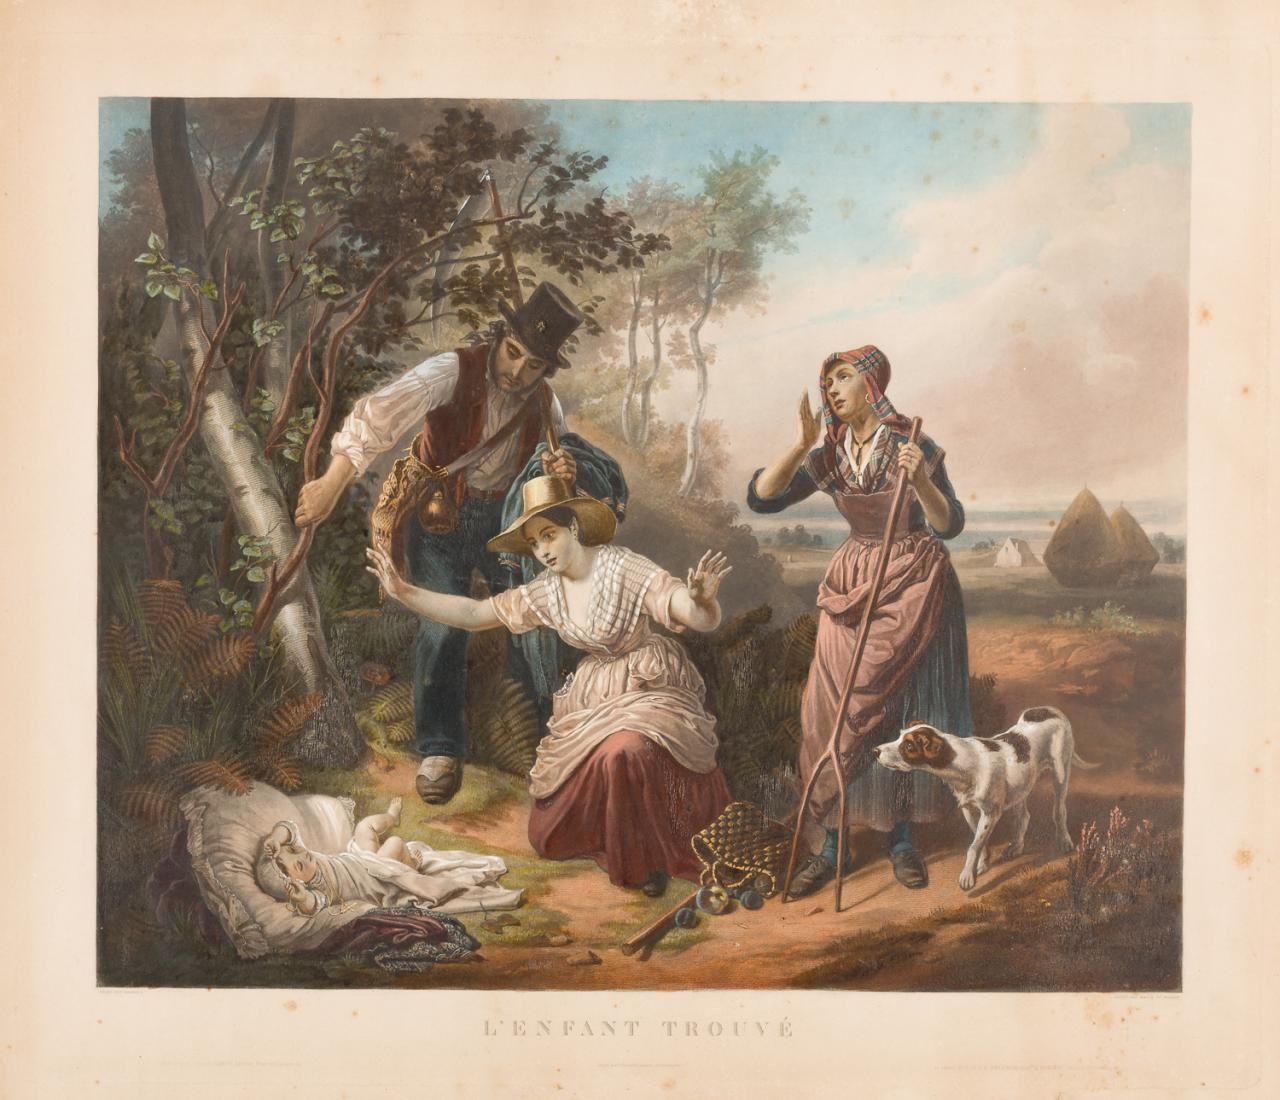 ESCUELA FRANCESA, S. XIX L'enfant trouvé
彩色平版画
60 x 70 cm